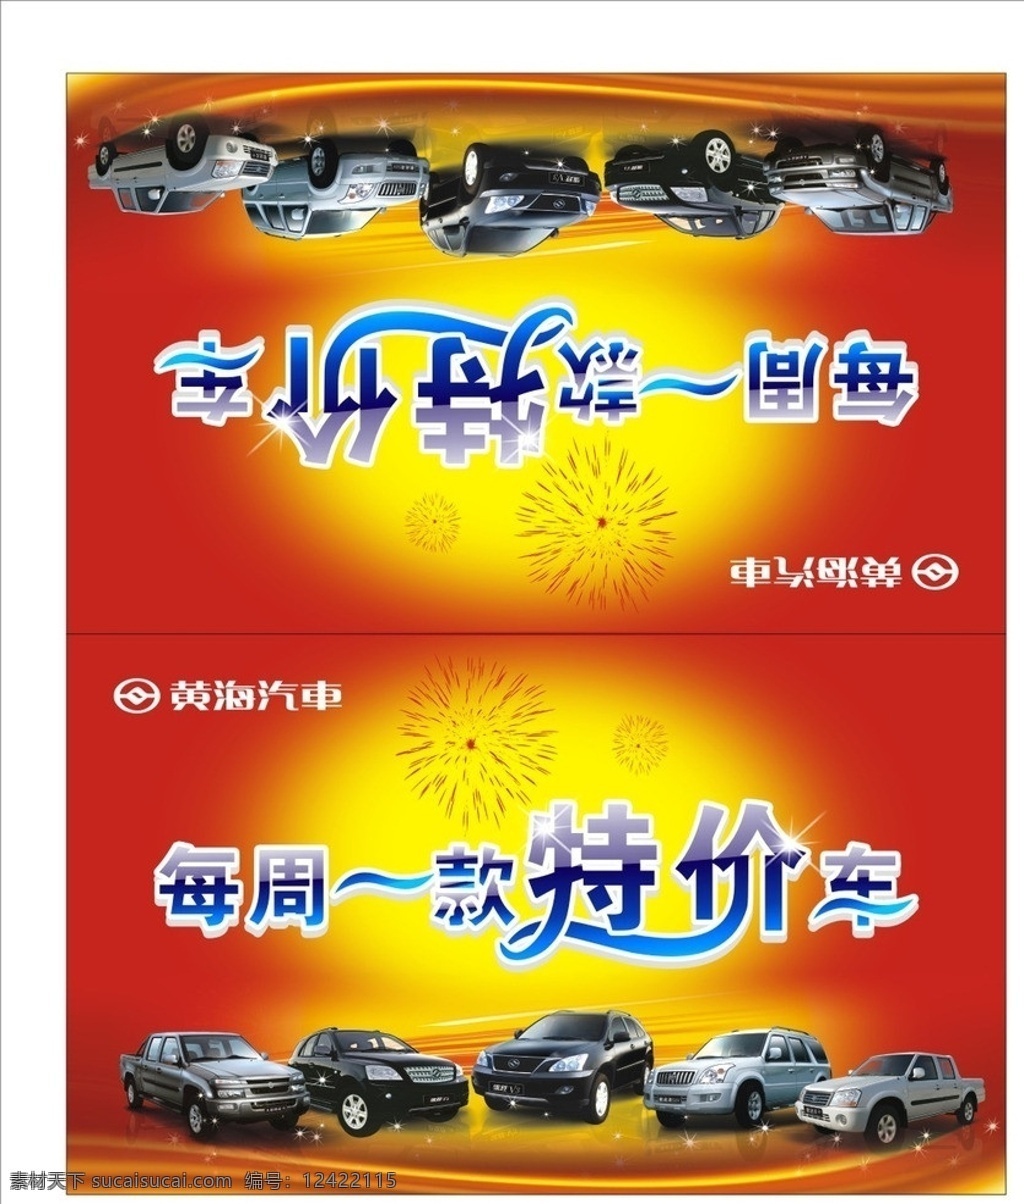 每周一 款 特价 车 车顶牌 喜庆 红色背景 黄海汽车 汽车广告 矢量